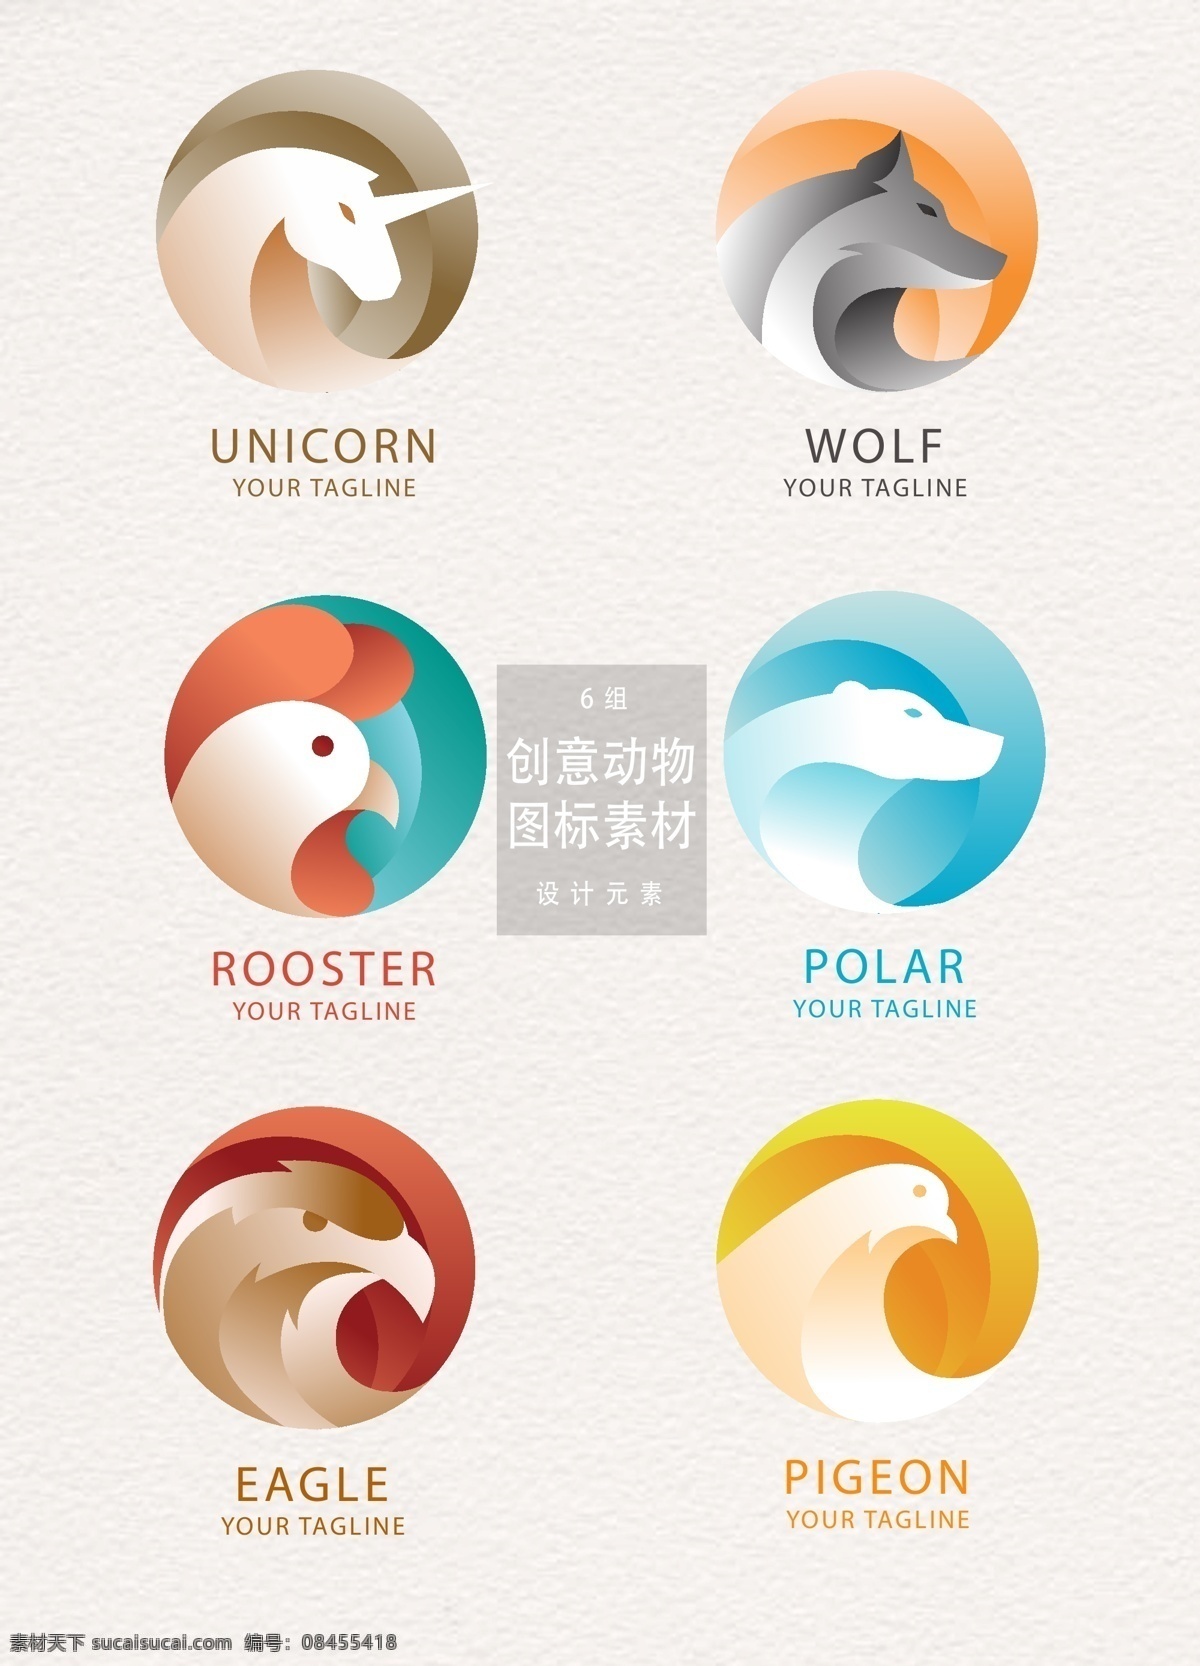 创意 动物 图案 图标 元素 设计元素 独角兽 狼 公鸡 动物图案 动物图标 创意动物图案 鹰